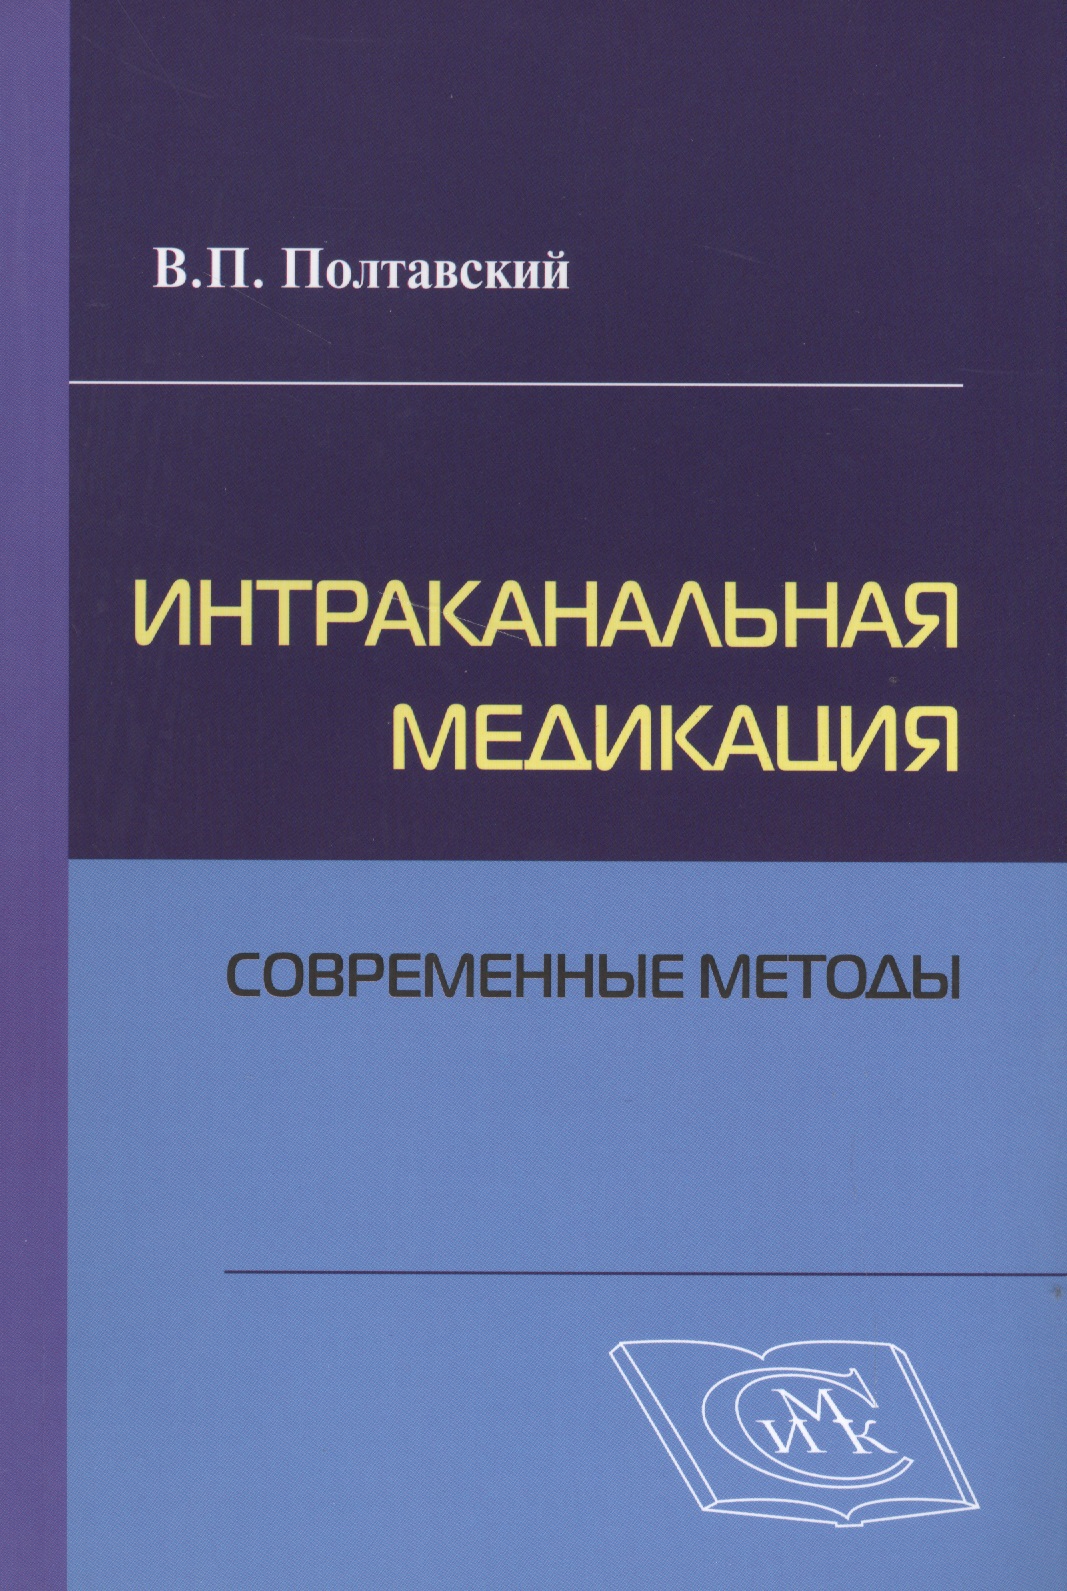 Интраканальная медикация: современные методы / 2-е изд., испр. и доп.